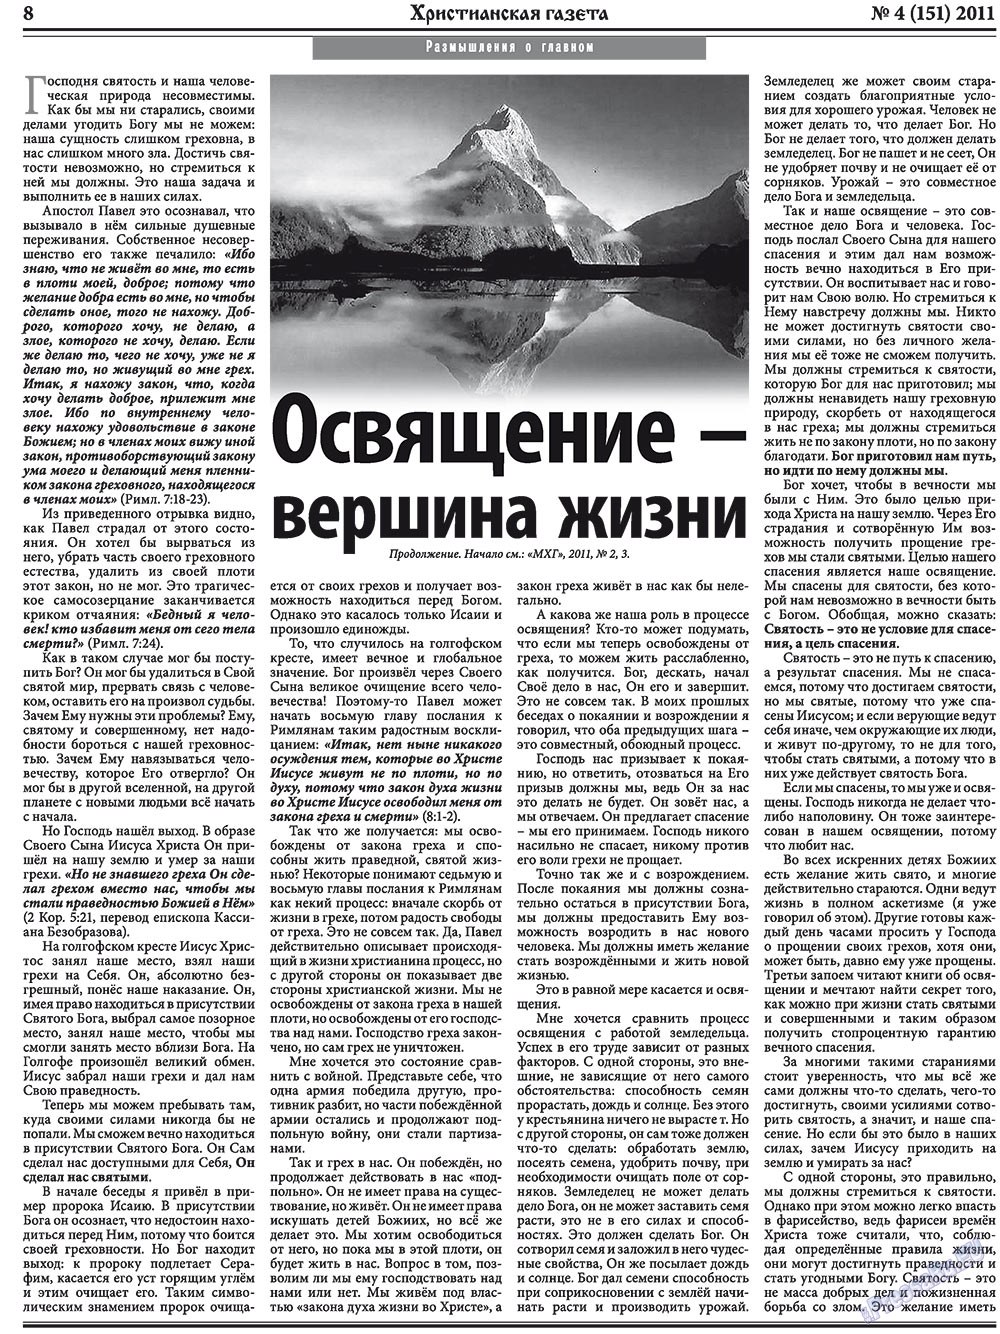 Христианская газета, газета. 2011 №4 стр.8